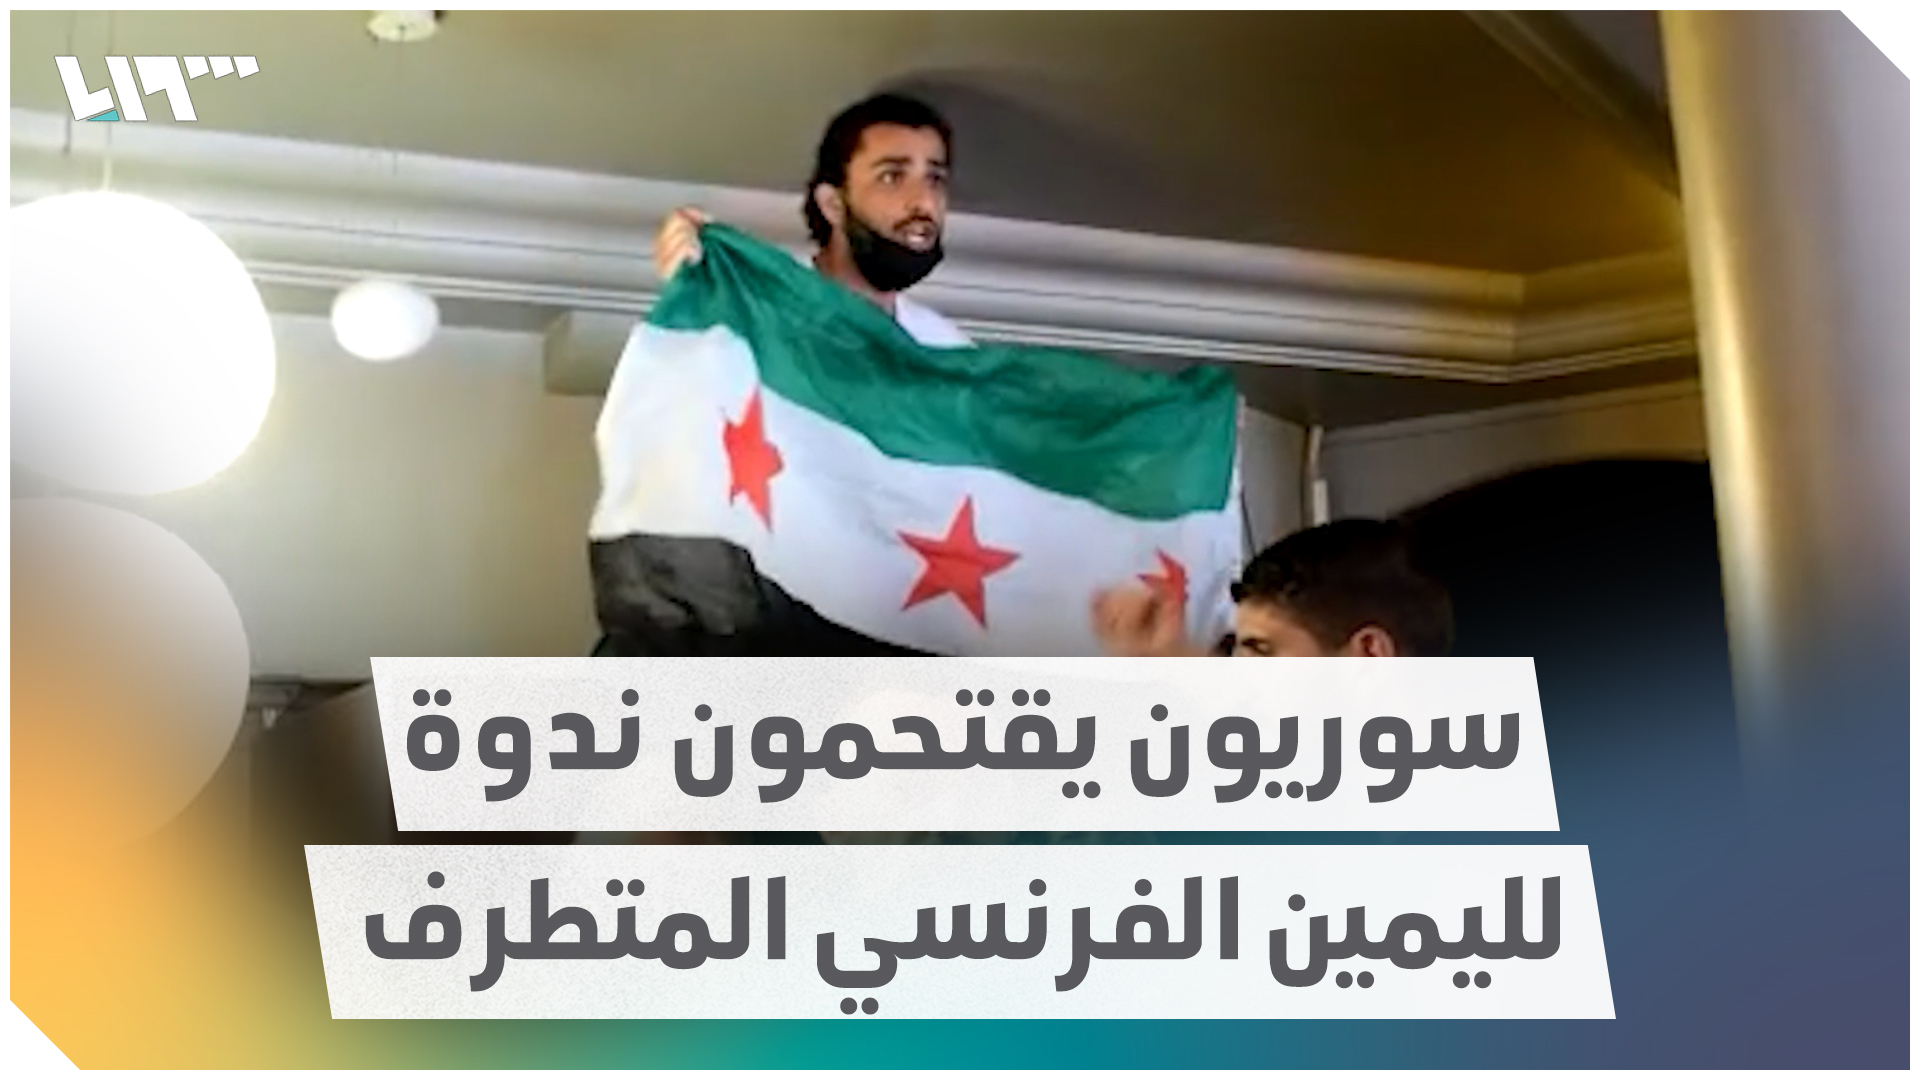 سوريون يقتحمون ندوة لليمين الفرنسي المتطرف وسط العاصمة باريس